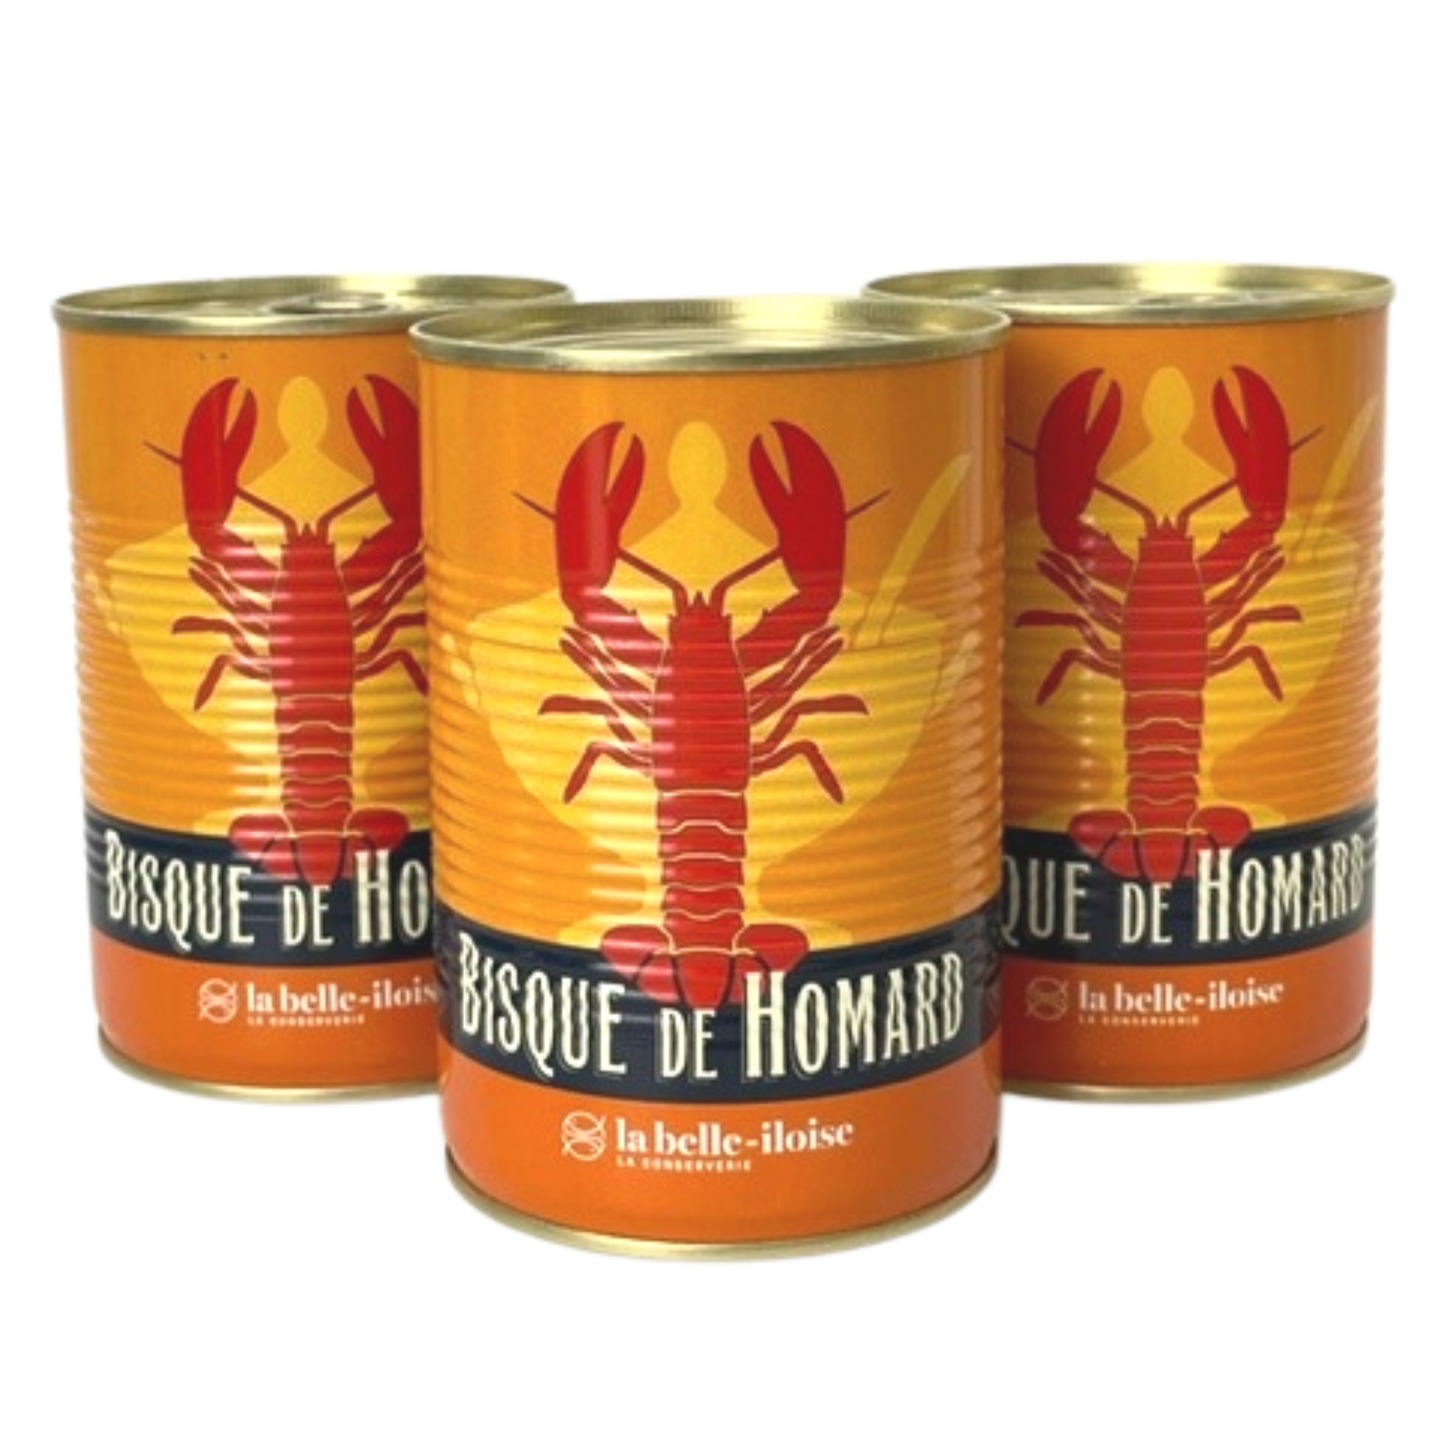 Bisque de Homard | Hummer Süppchen mit Cognac | La Belle-Iloise